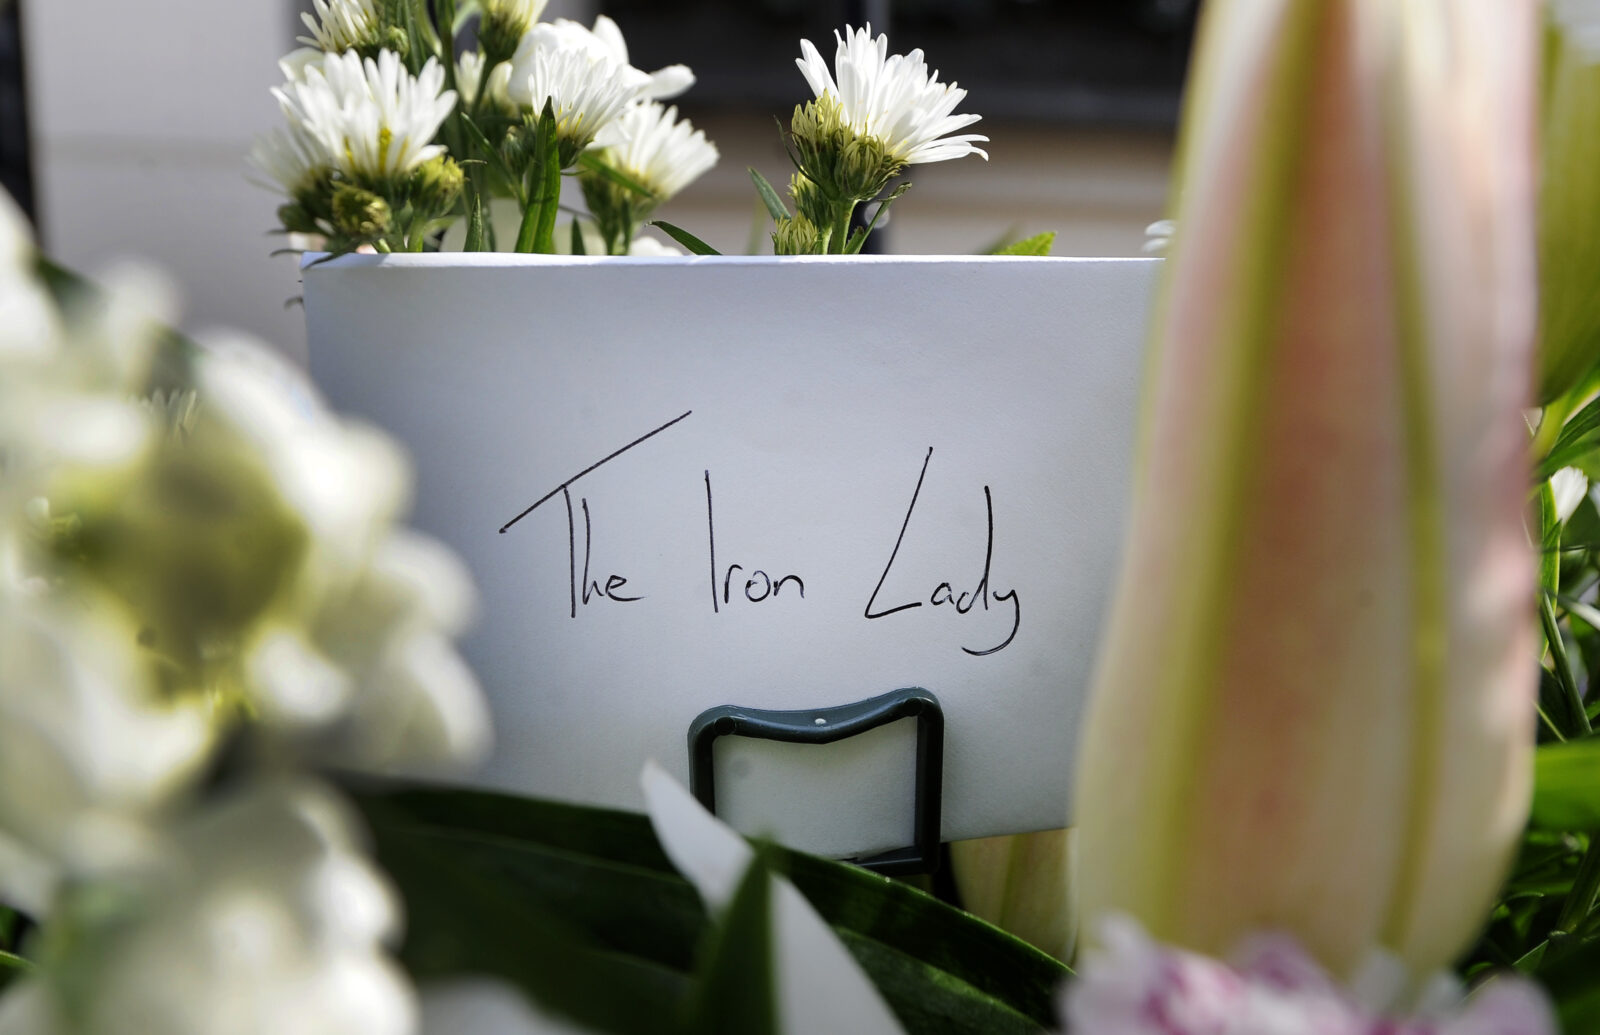 Ljudi ostavljaju cvijeće i poruke ispred doma M. Thatcher u Londonu (EPA)